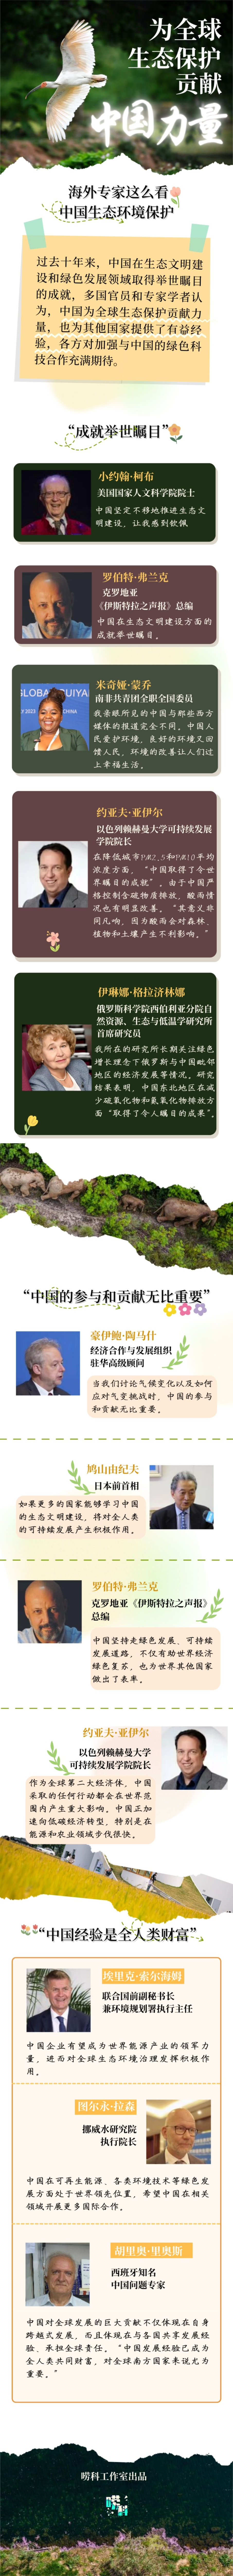 唠科 | 海外专家这么看中国生态保护